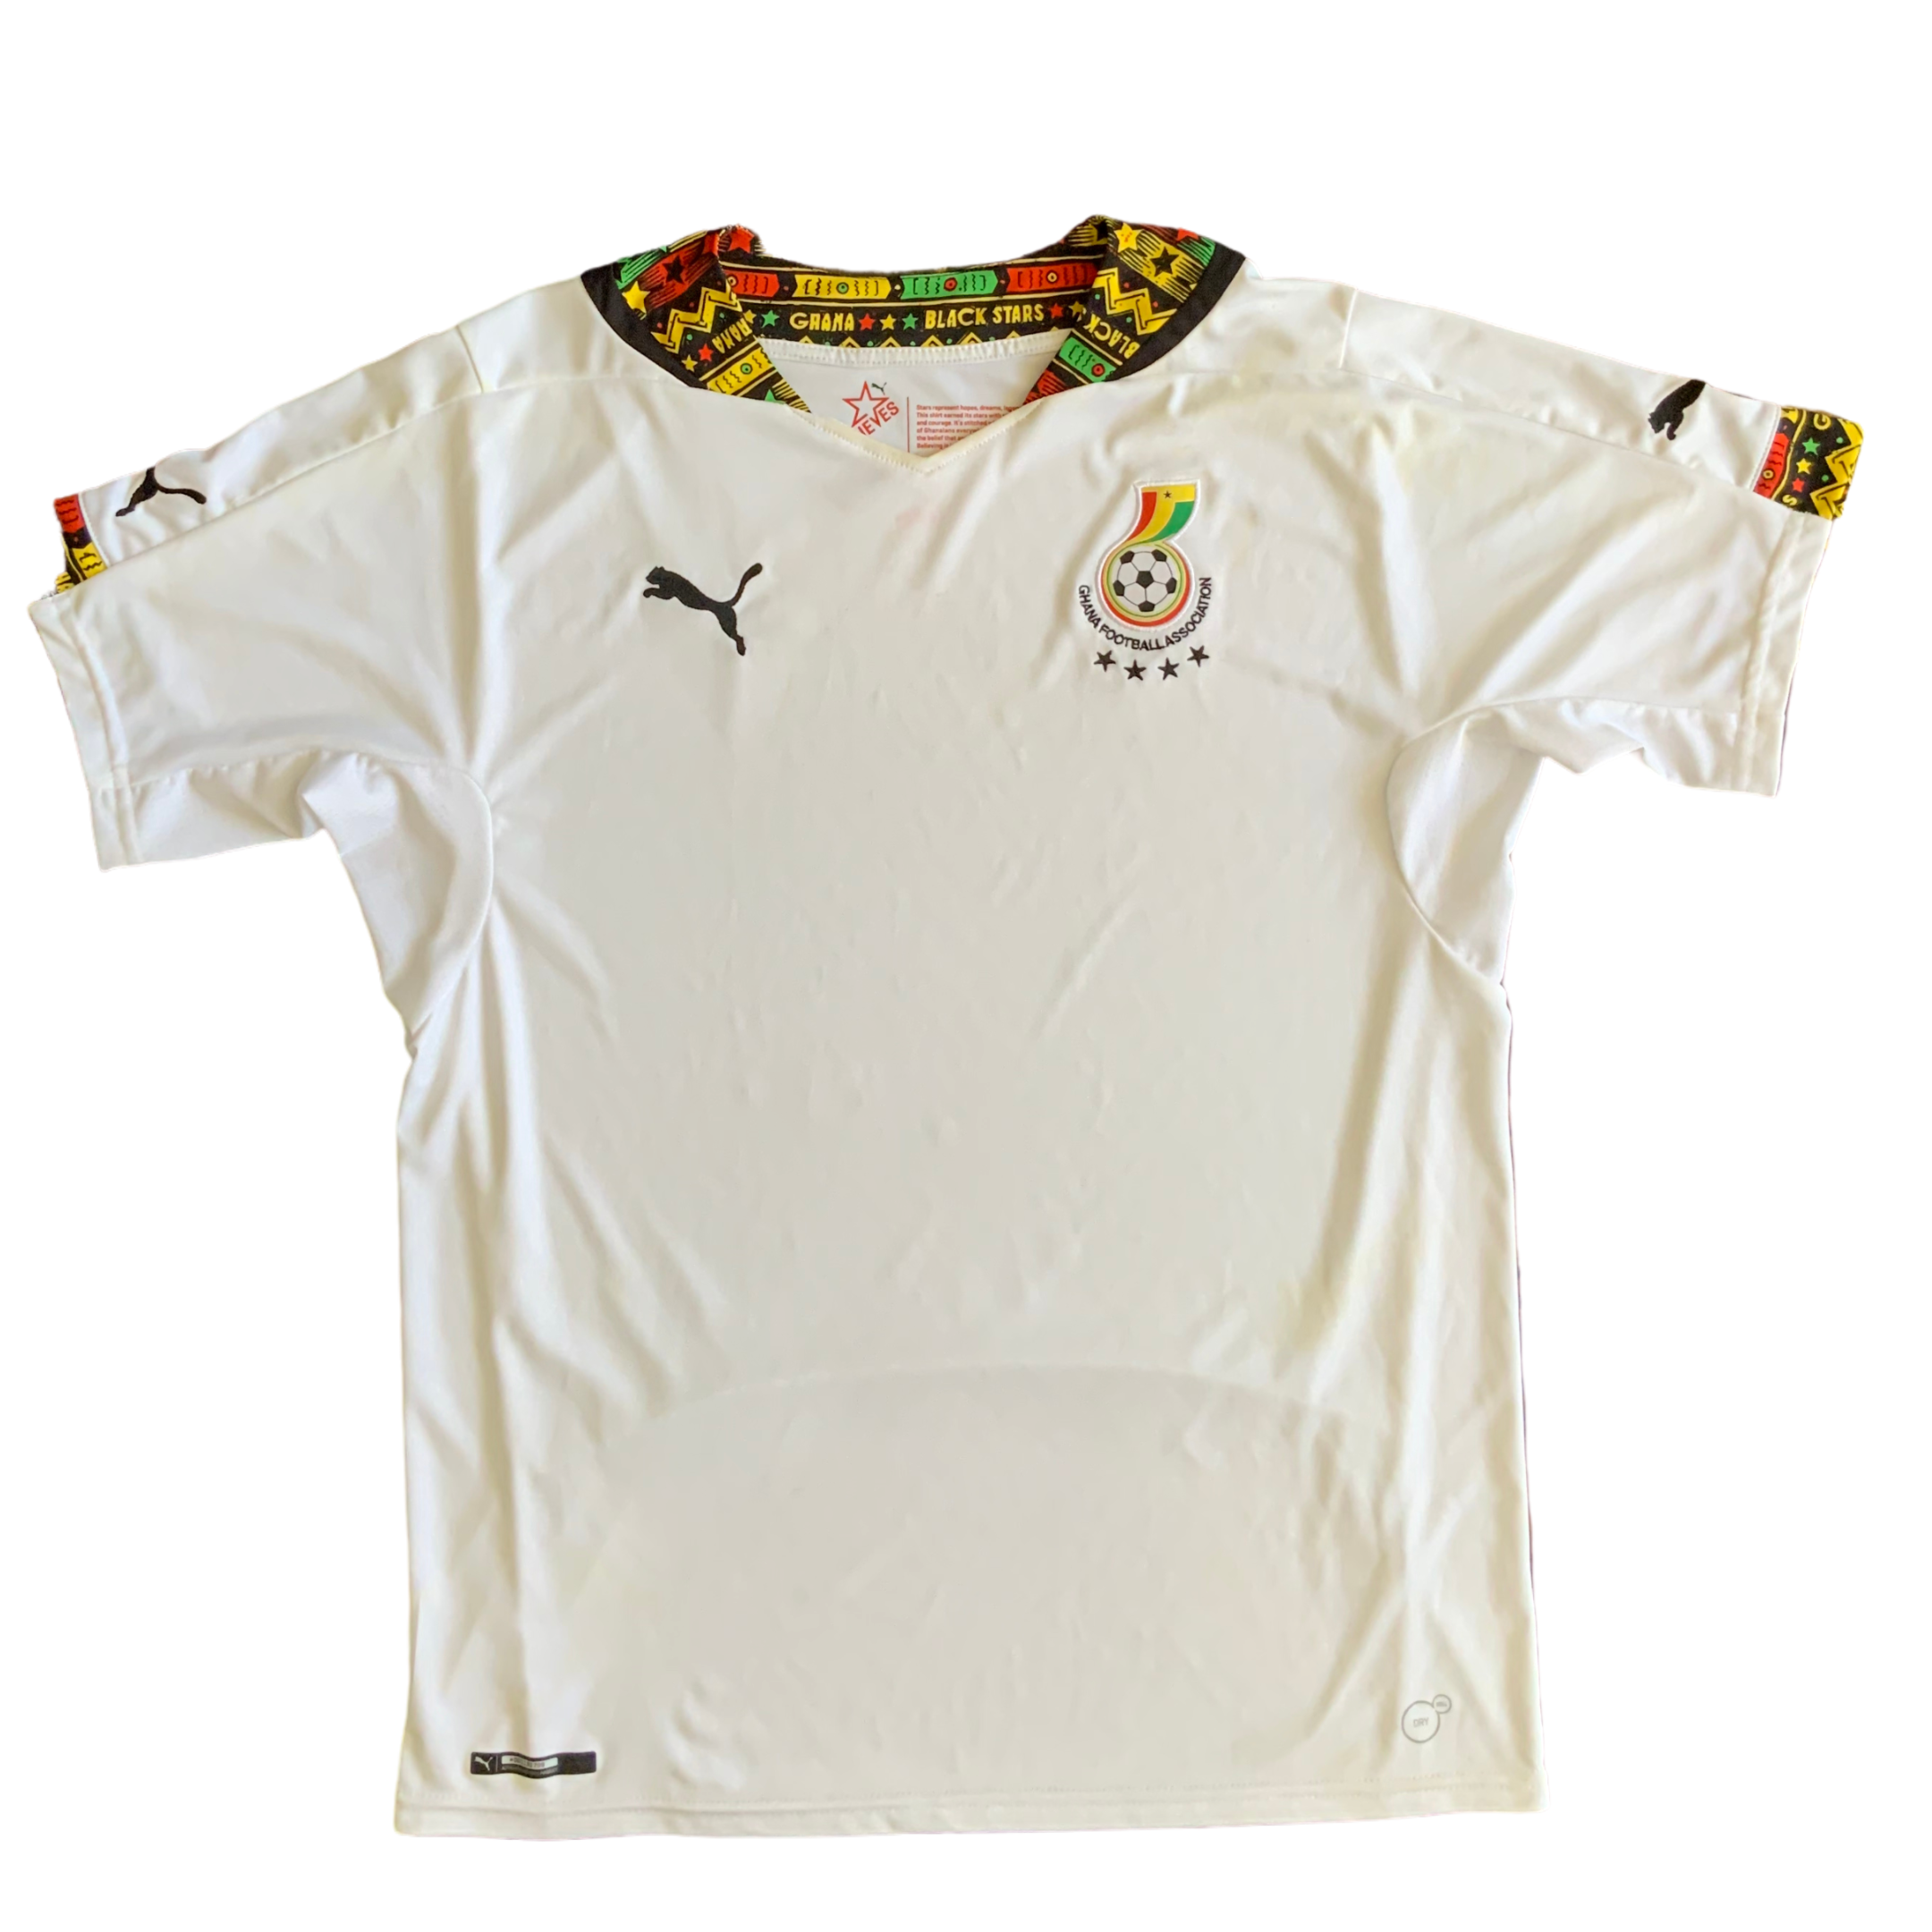 ghana jersey 2014